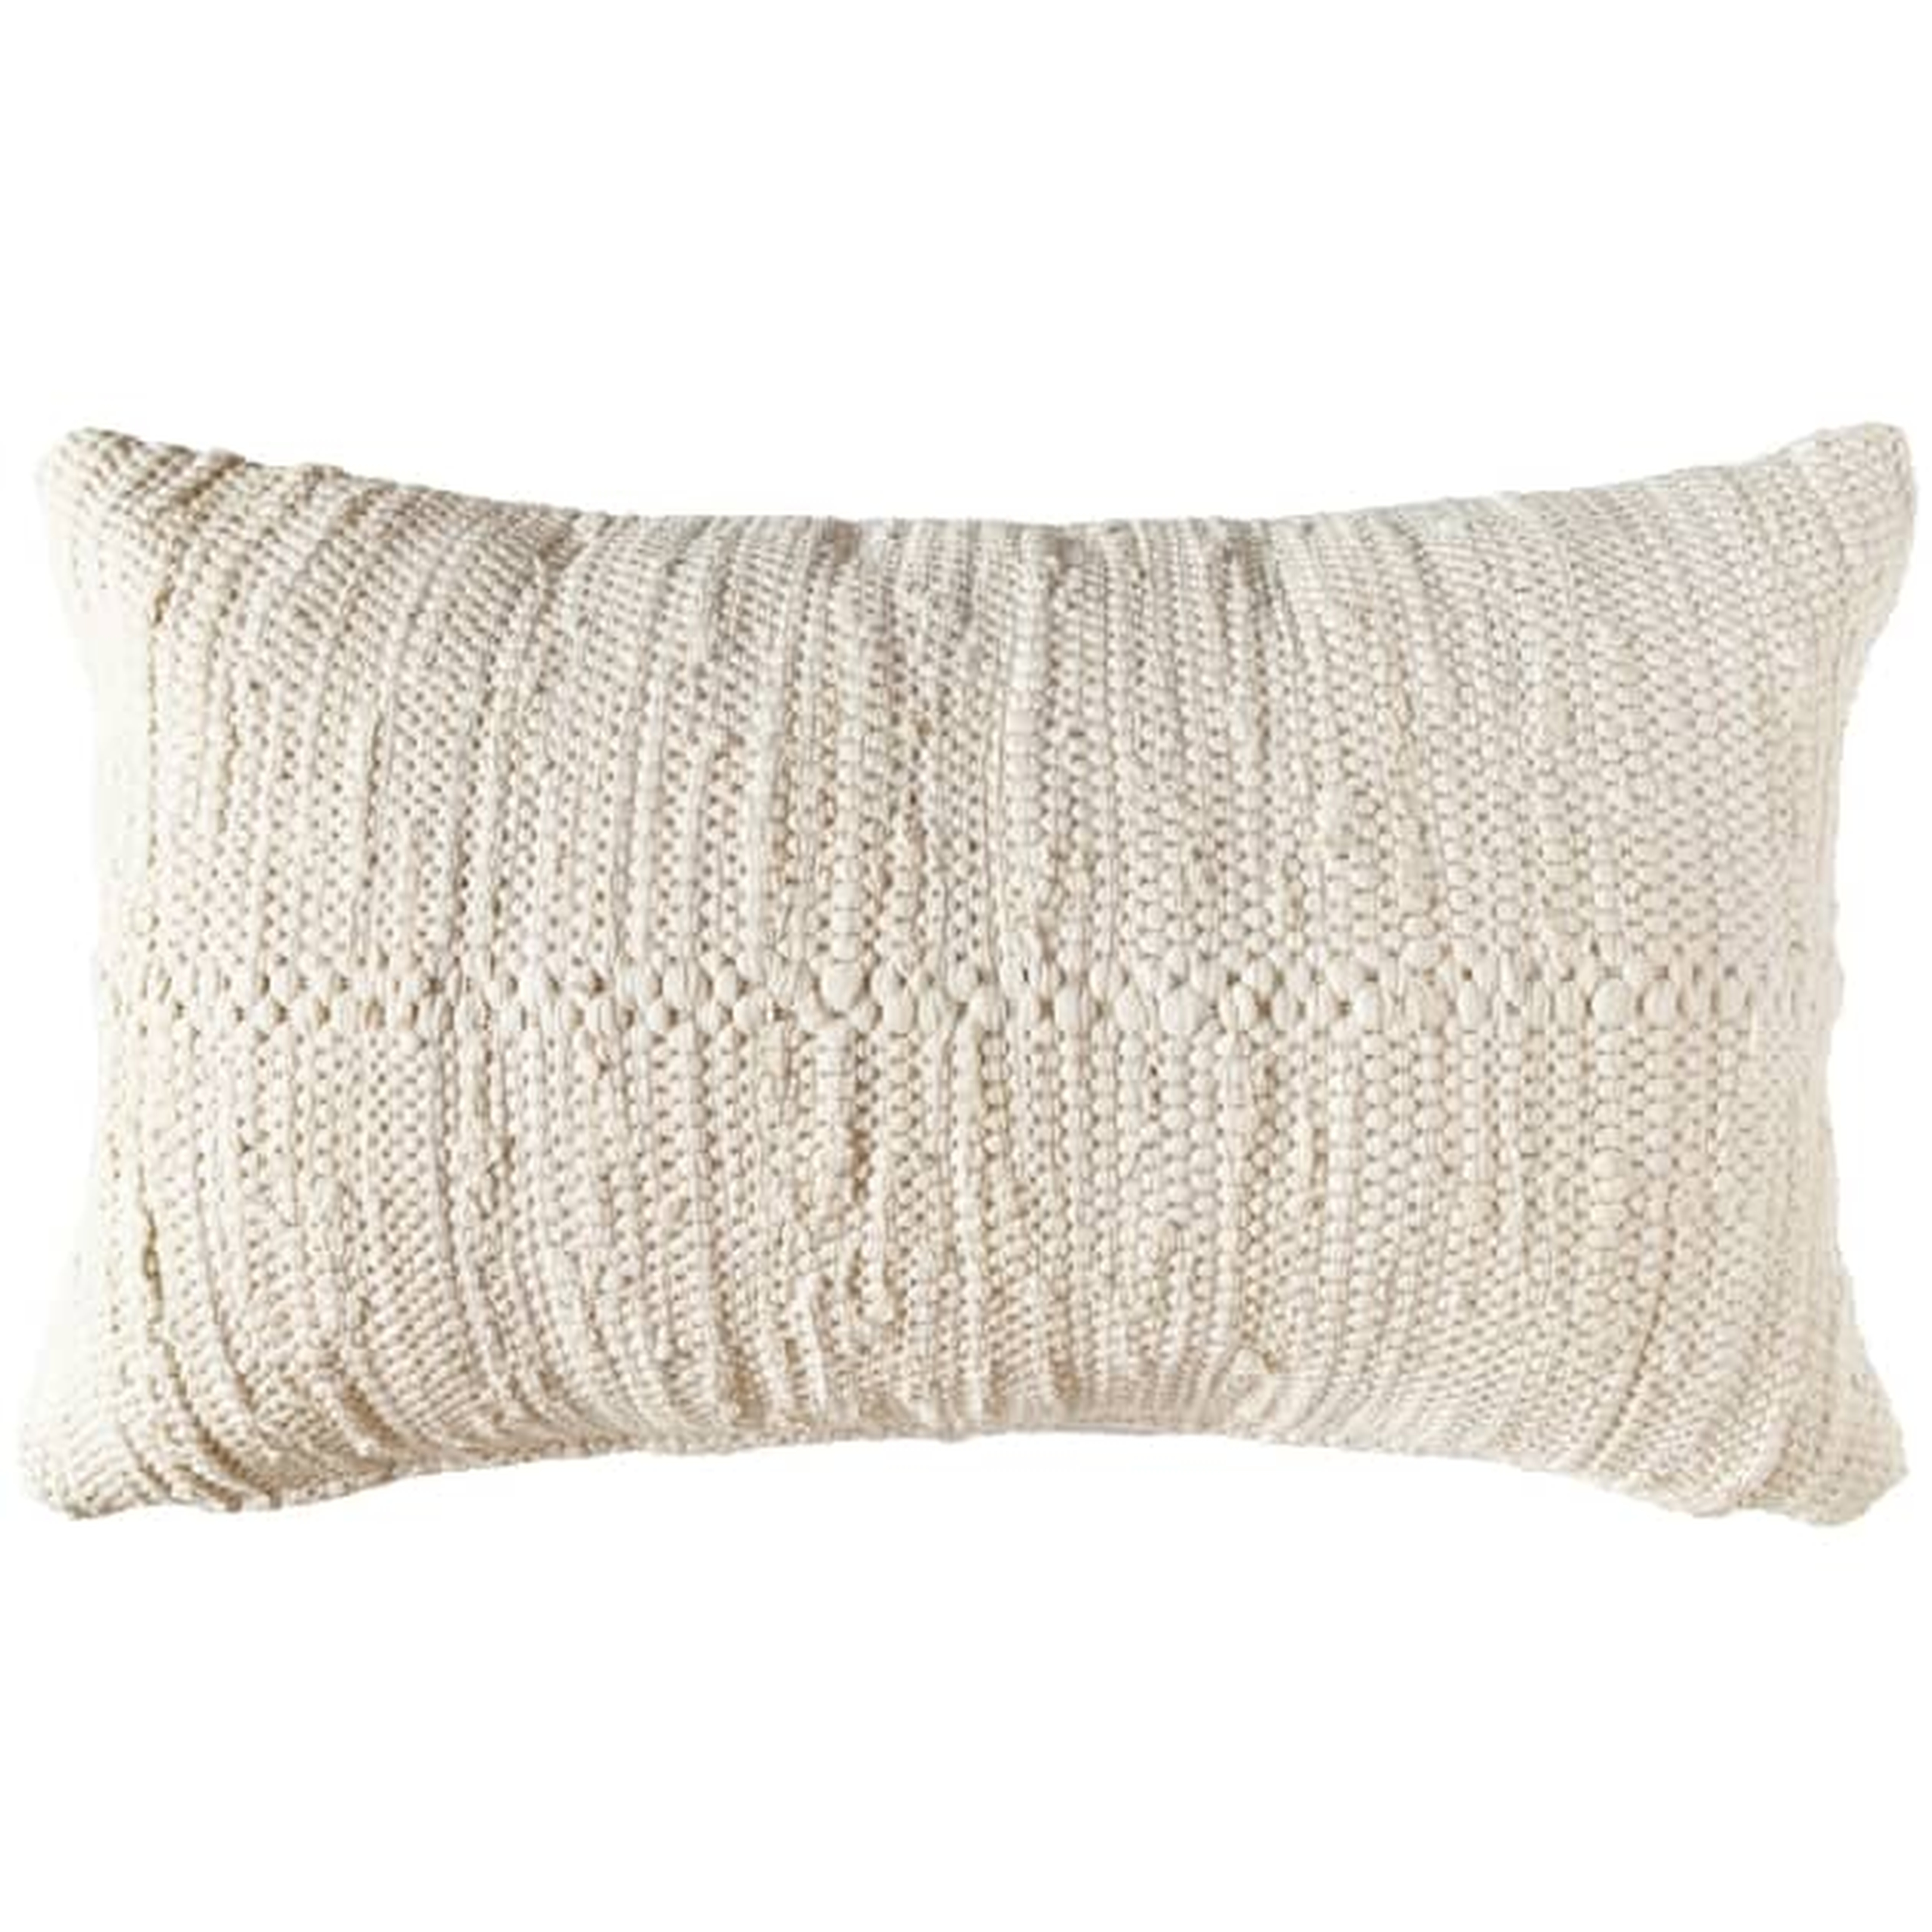 Chindi Lumbar Pillow Cover, Cream, 24" x 14" w/insert - PillowPia